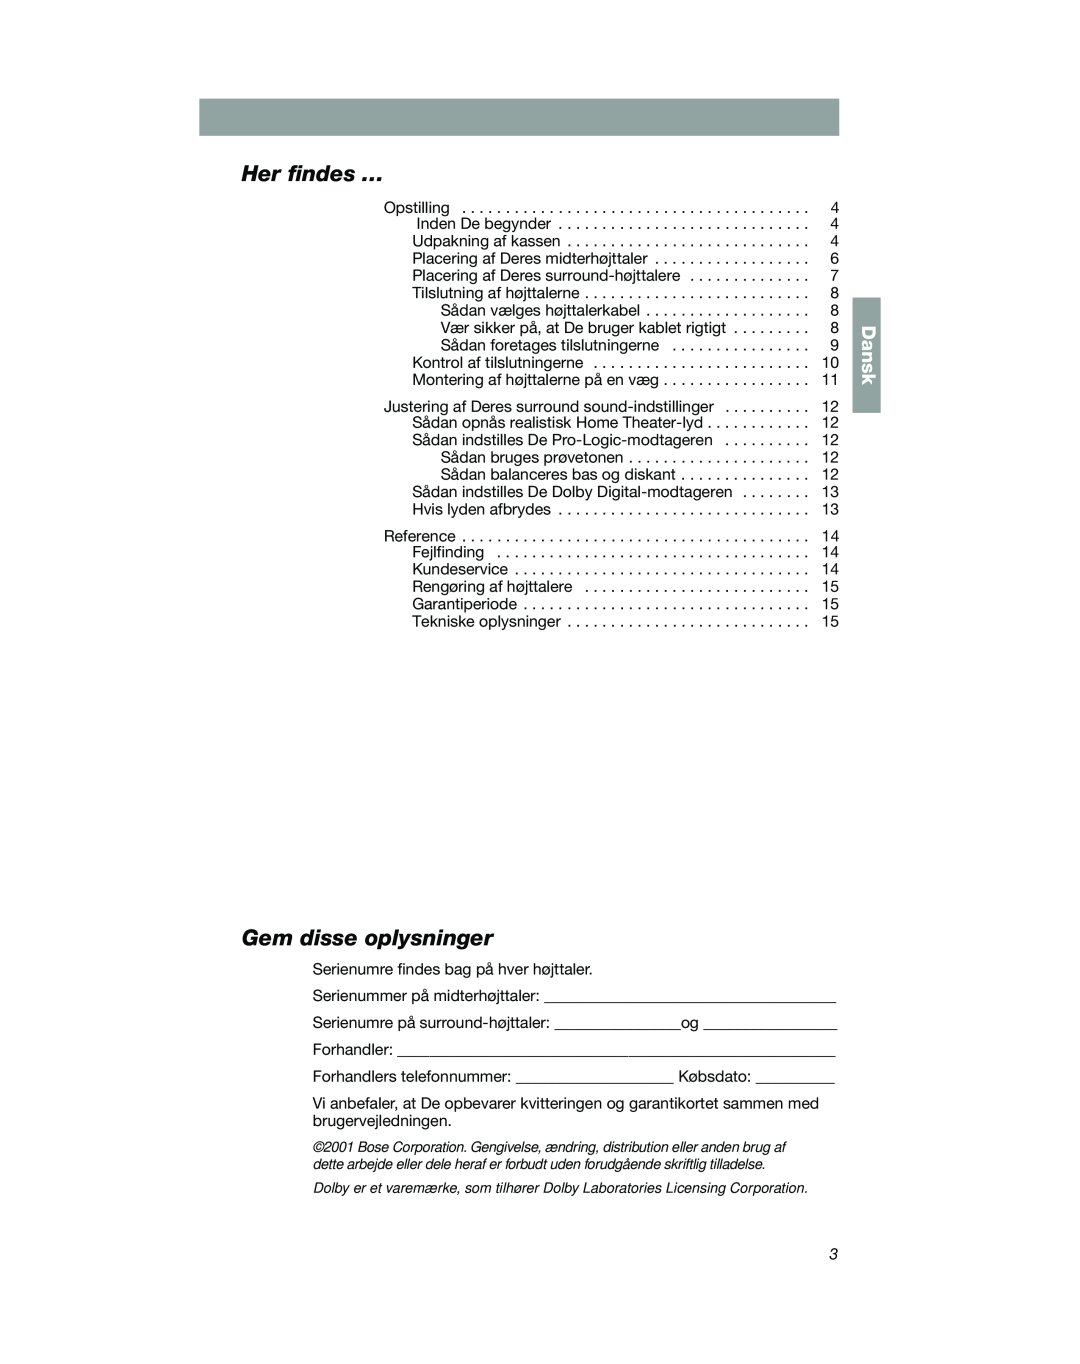 Bose VCS-10 manual Her ﬁndes …, Gem disse oplysninger, Dansk 